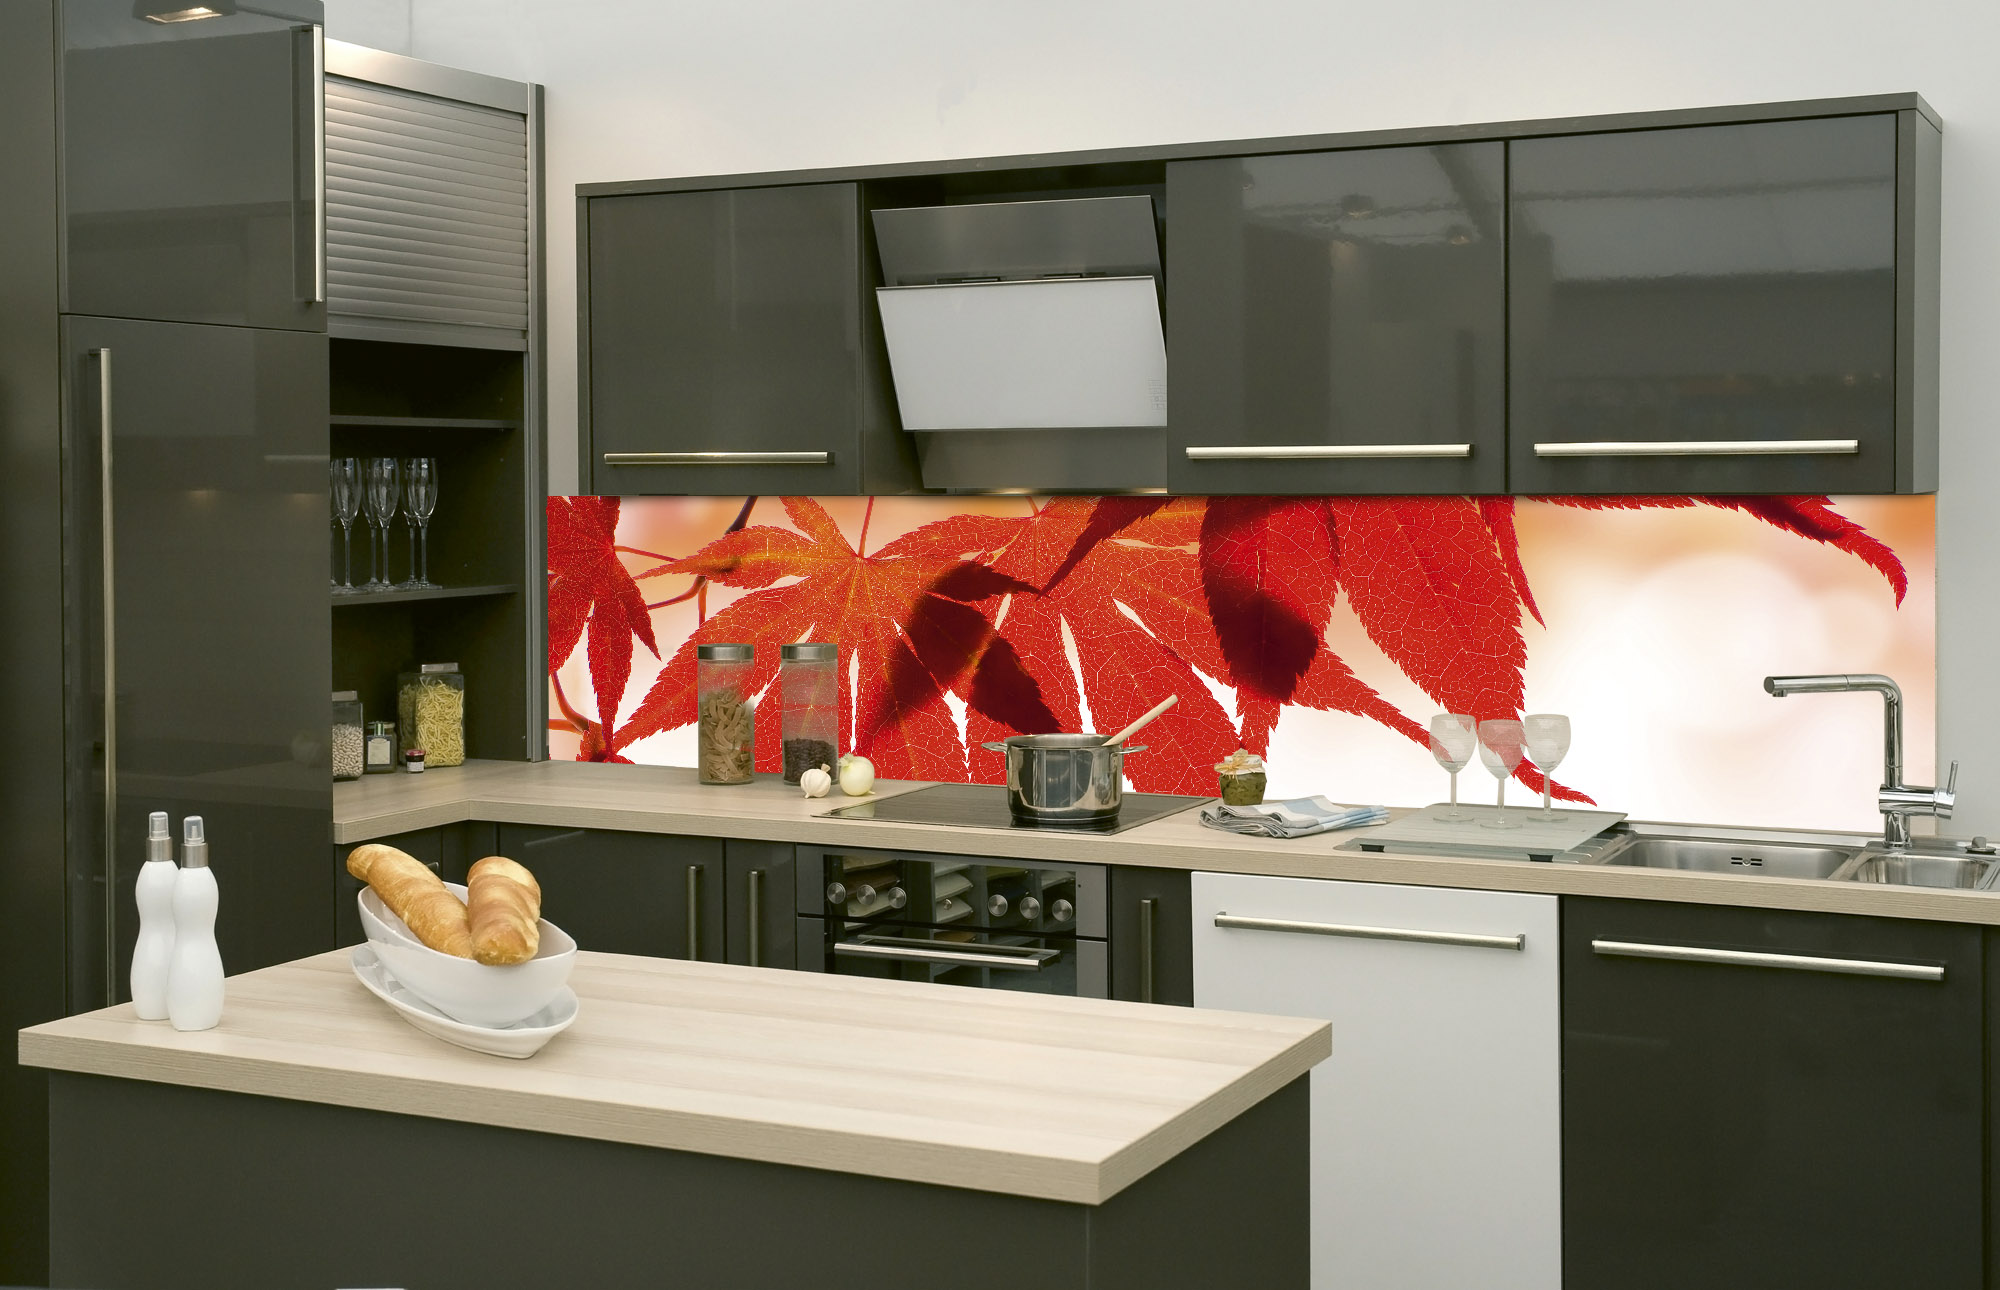 Folie Küche weiß matt 61,5 cm 5,98 € /m 3 m Küchenfolie 